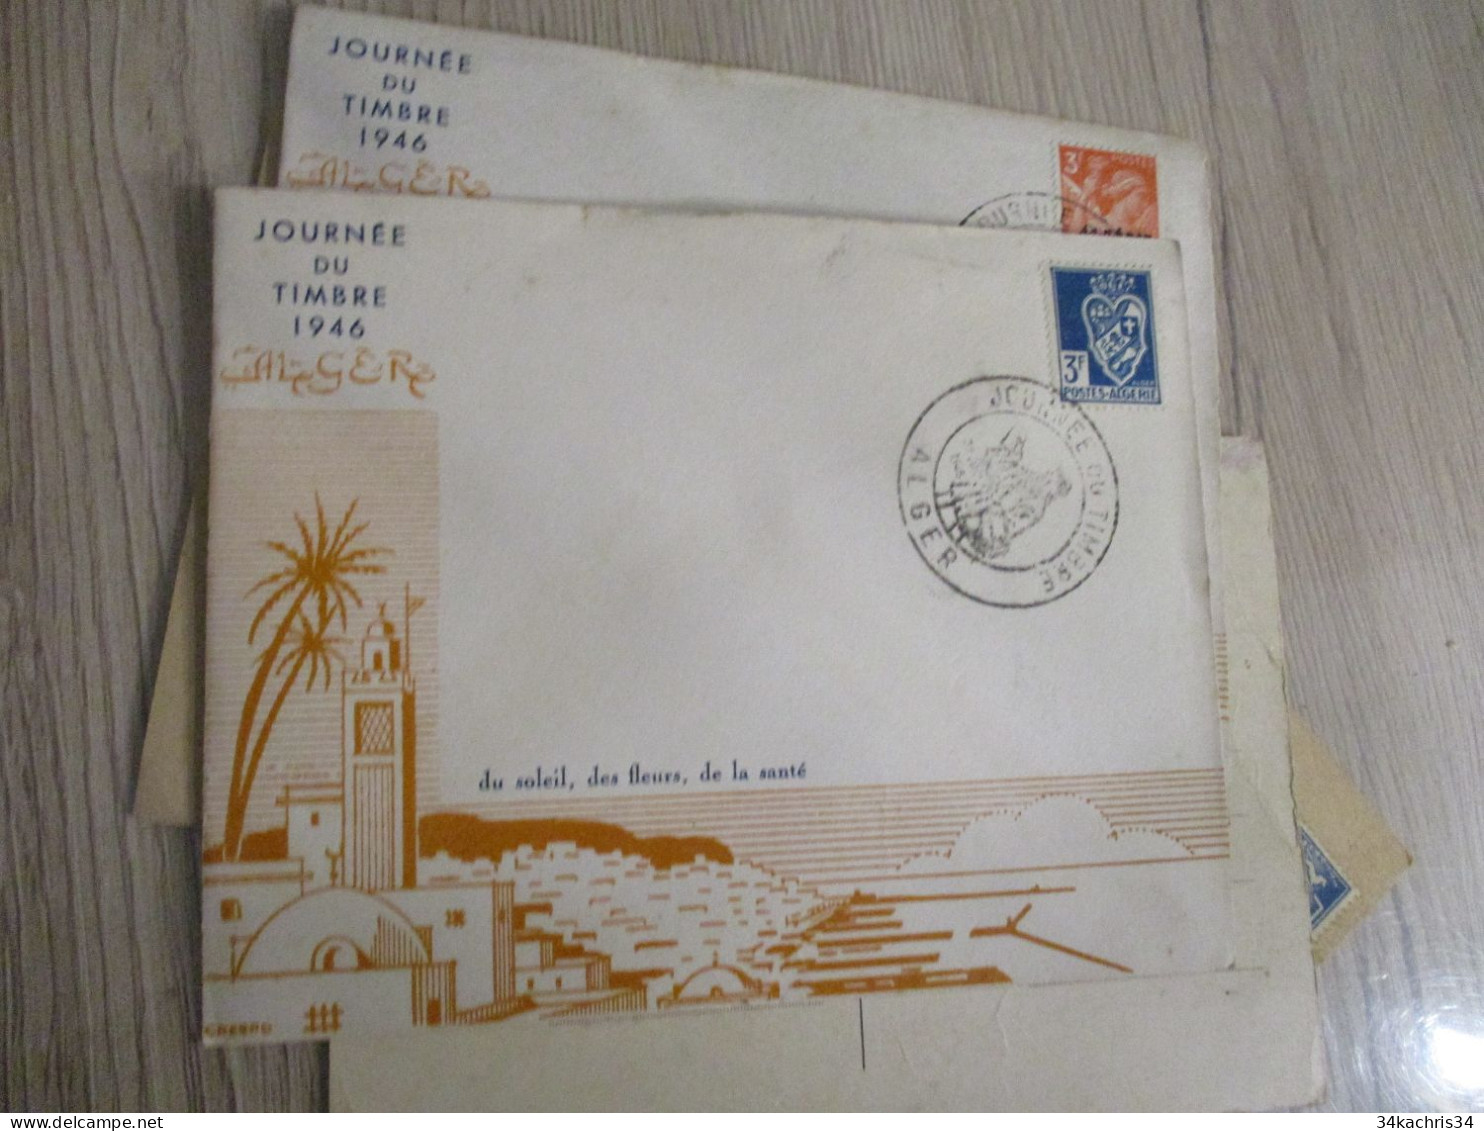 Algérie lot 6 lettres entier premiers jours carte maximum